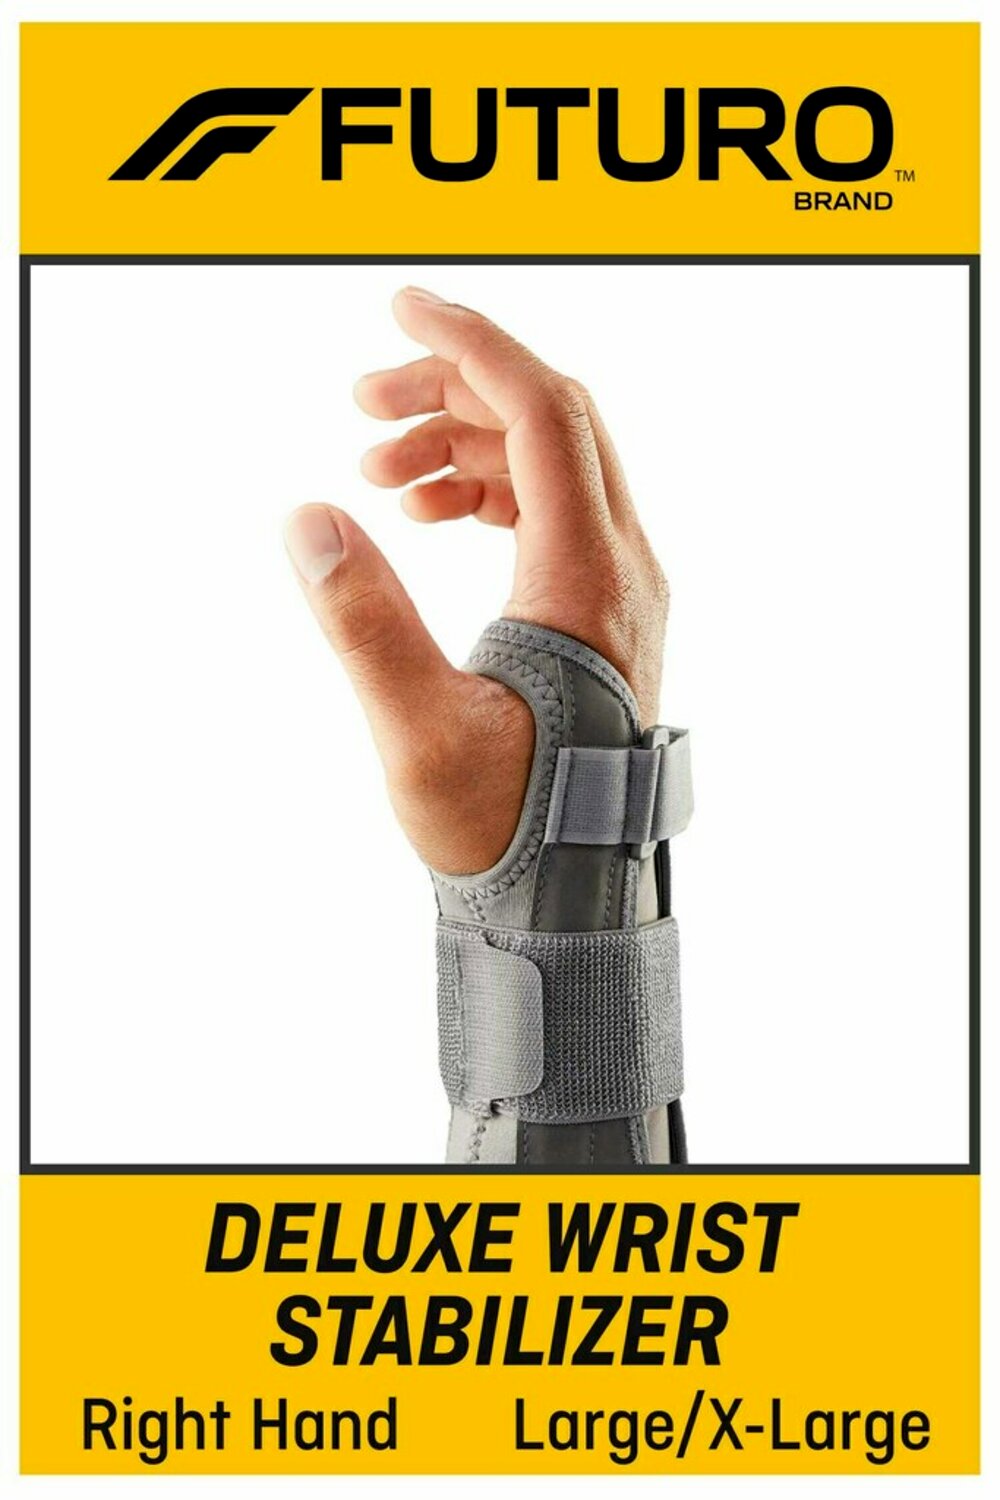 7100160917 - FUTURO Deluxe Wrist Stabilizer Right Hand, 09137ENT, L/XL